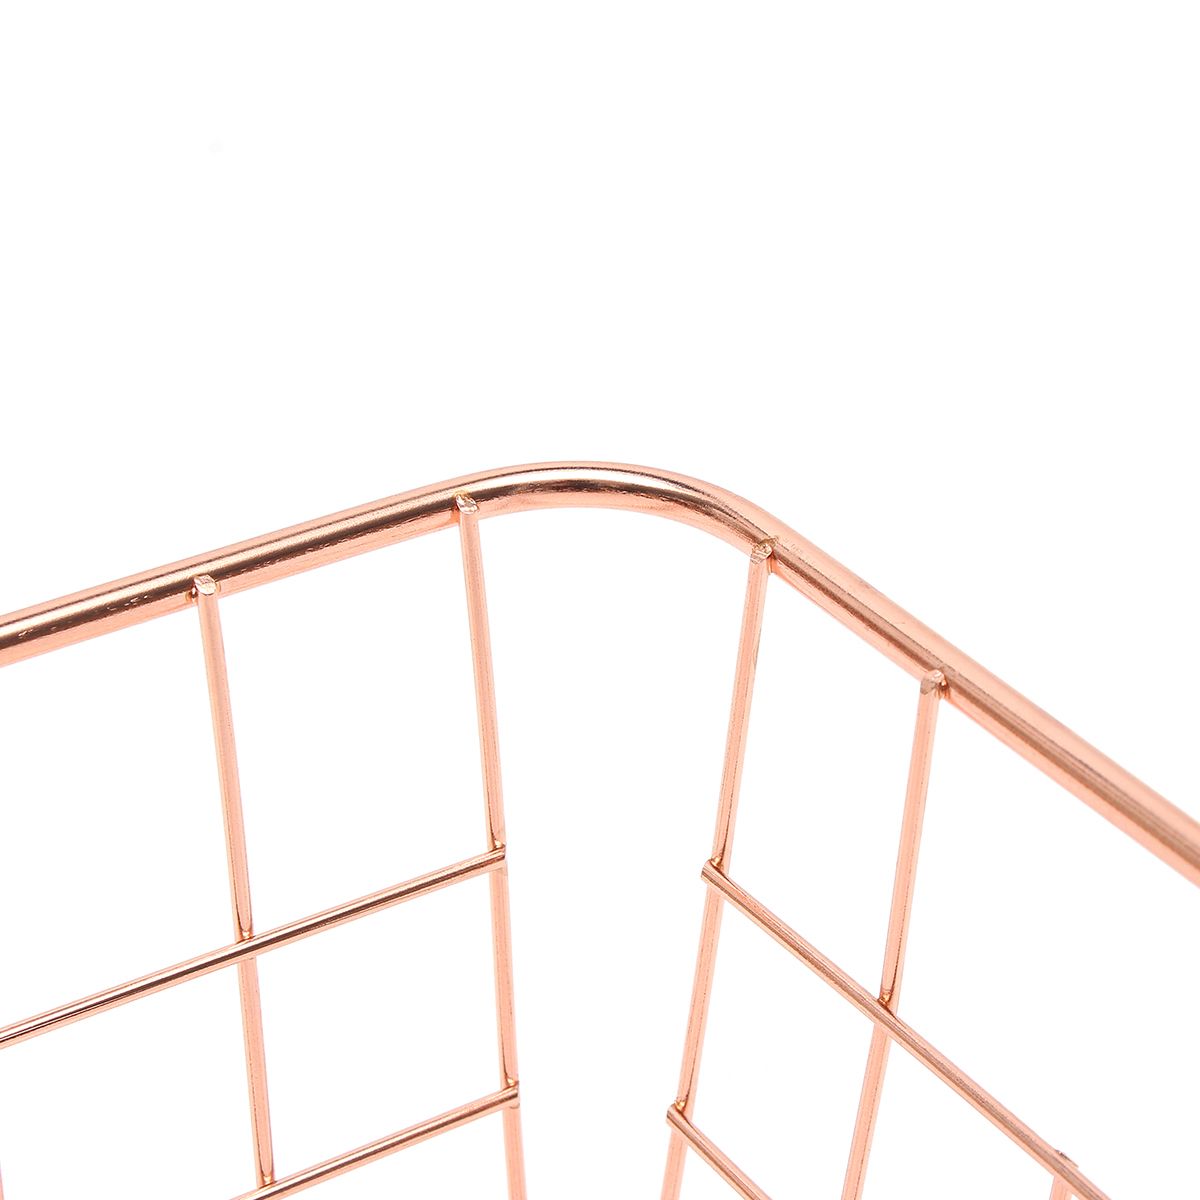 Design-Household-Rose-Gold-Baskets-Copper-Wire-Storage-Bins-Steel-Home-Organization-Modern-Decor-1317823